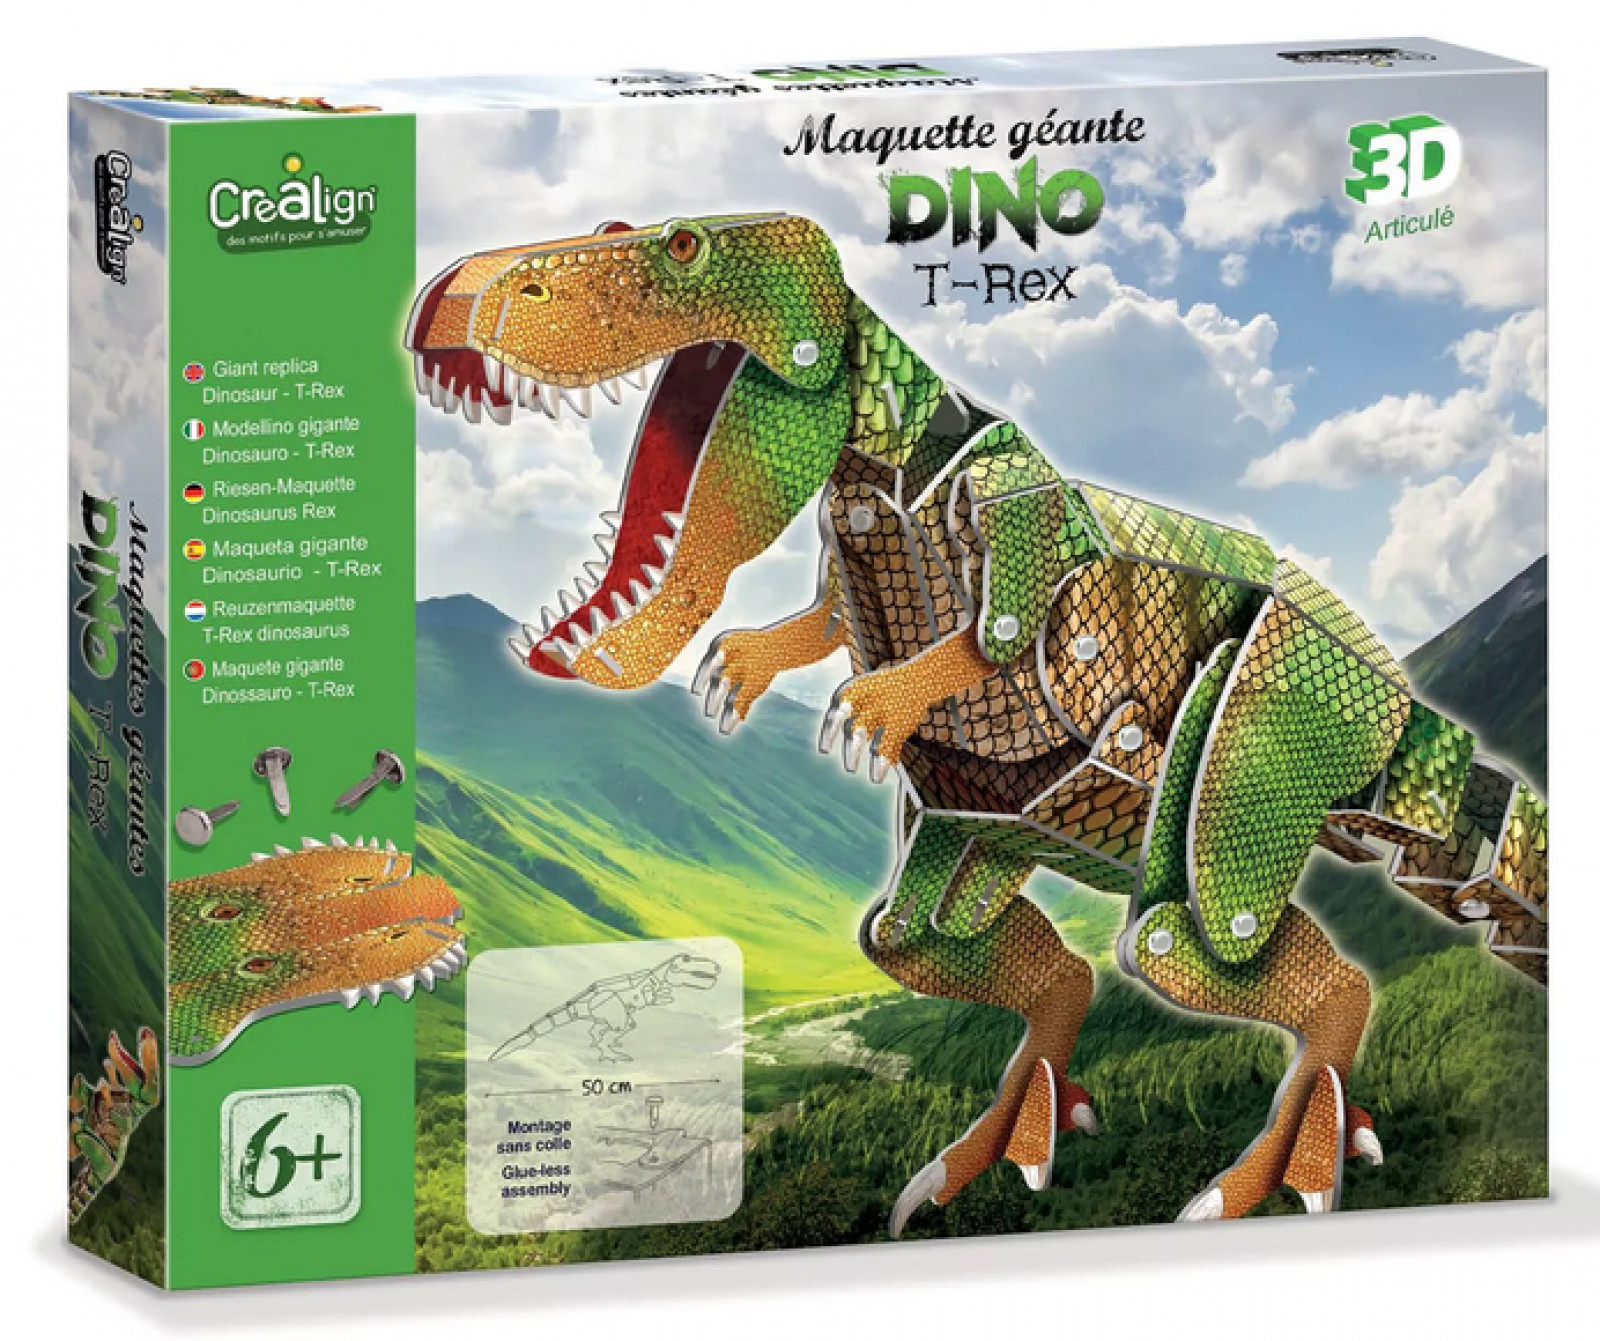 Maquette géante Dino T-Rex - Boutique Toup'tibou - photo 6